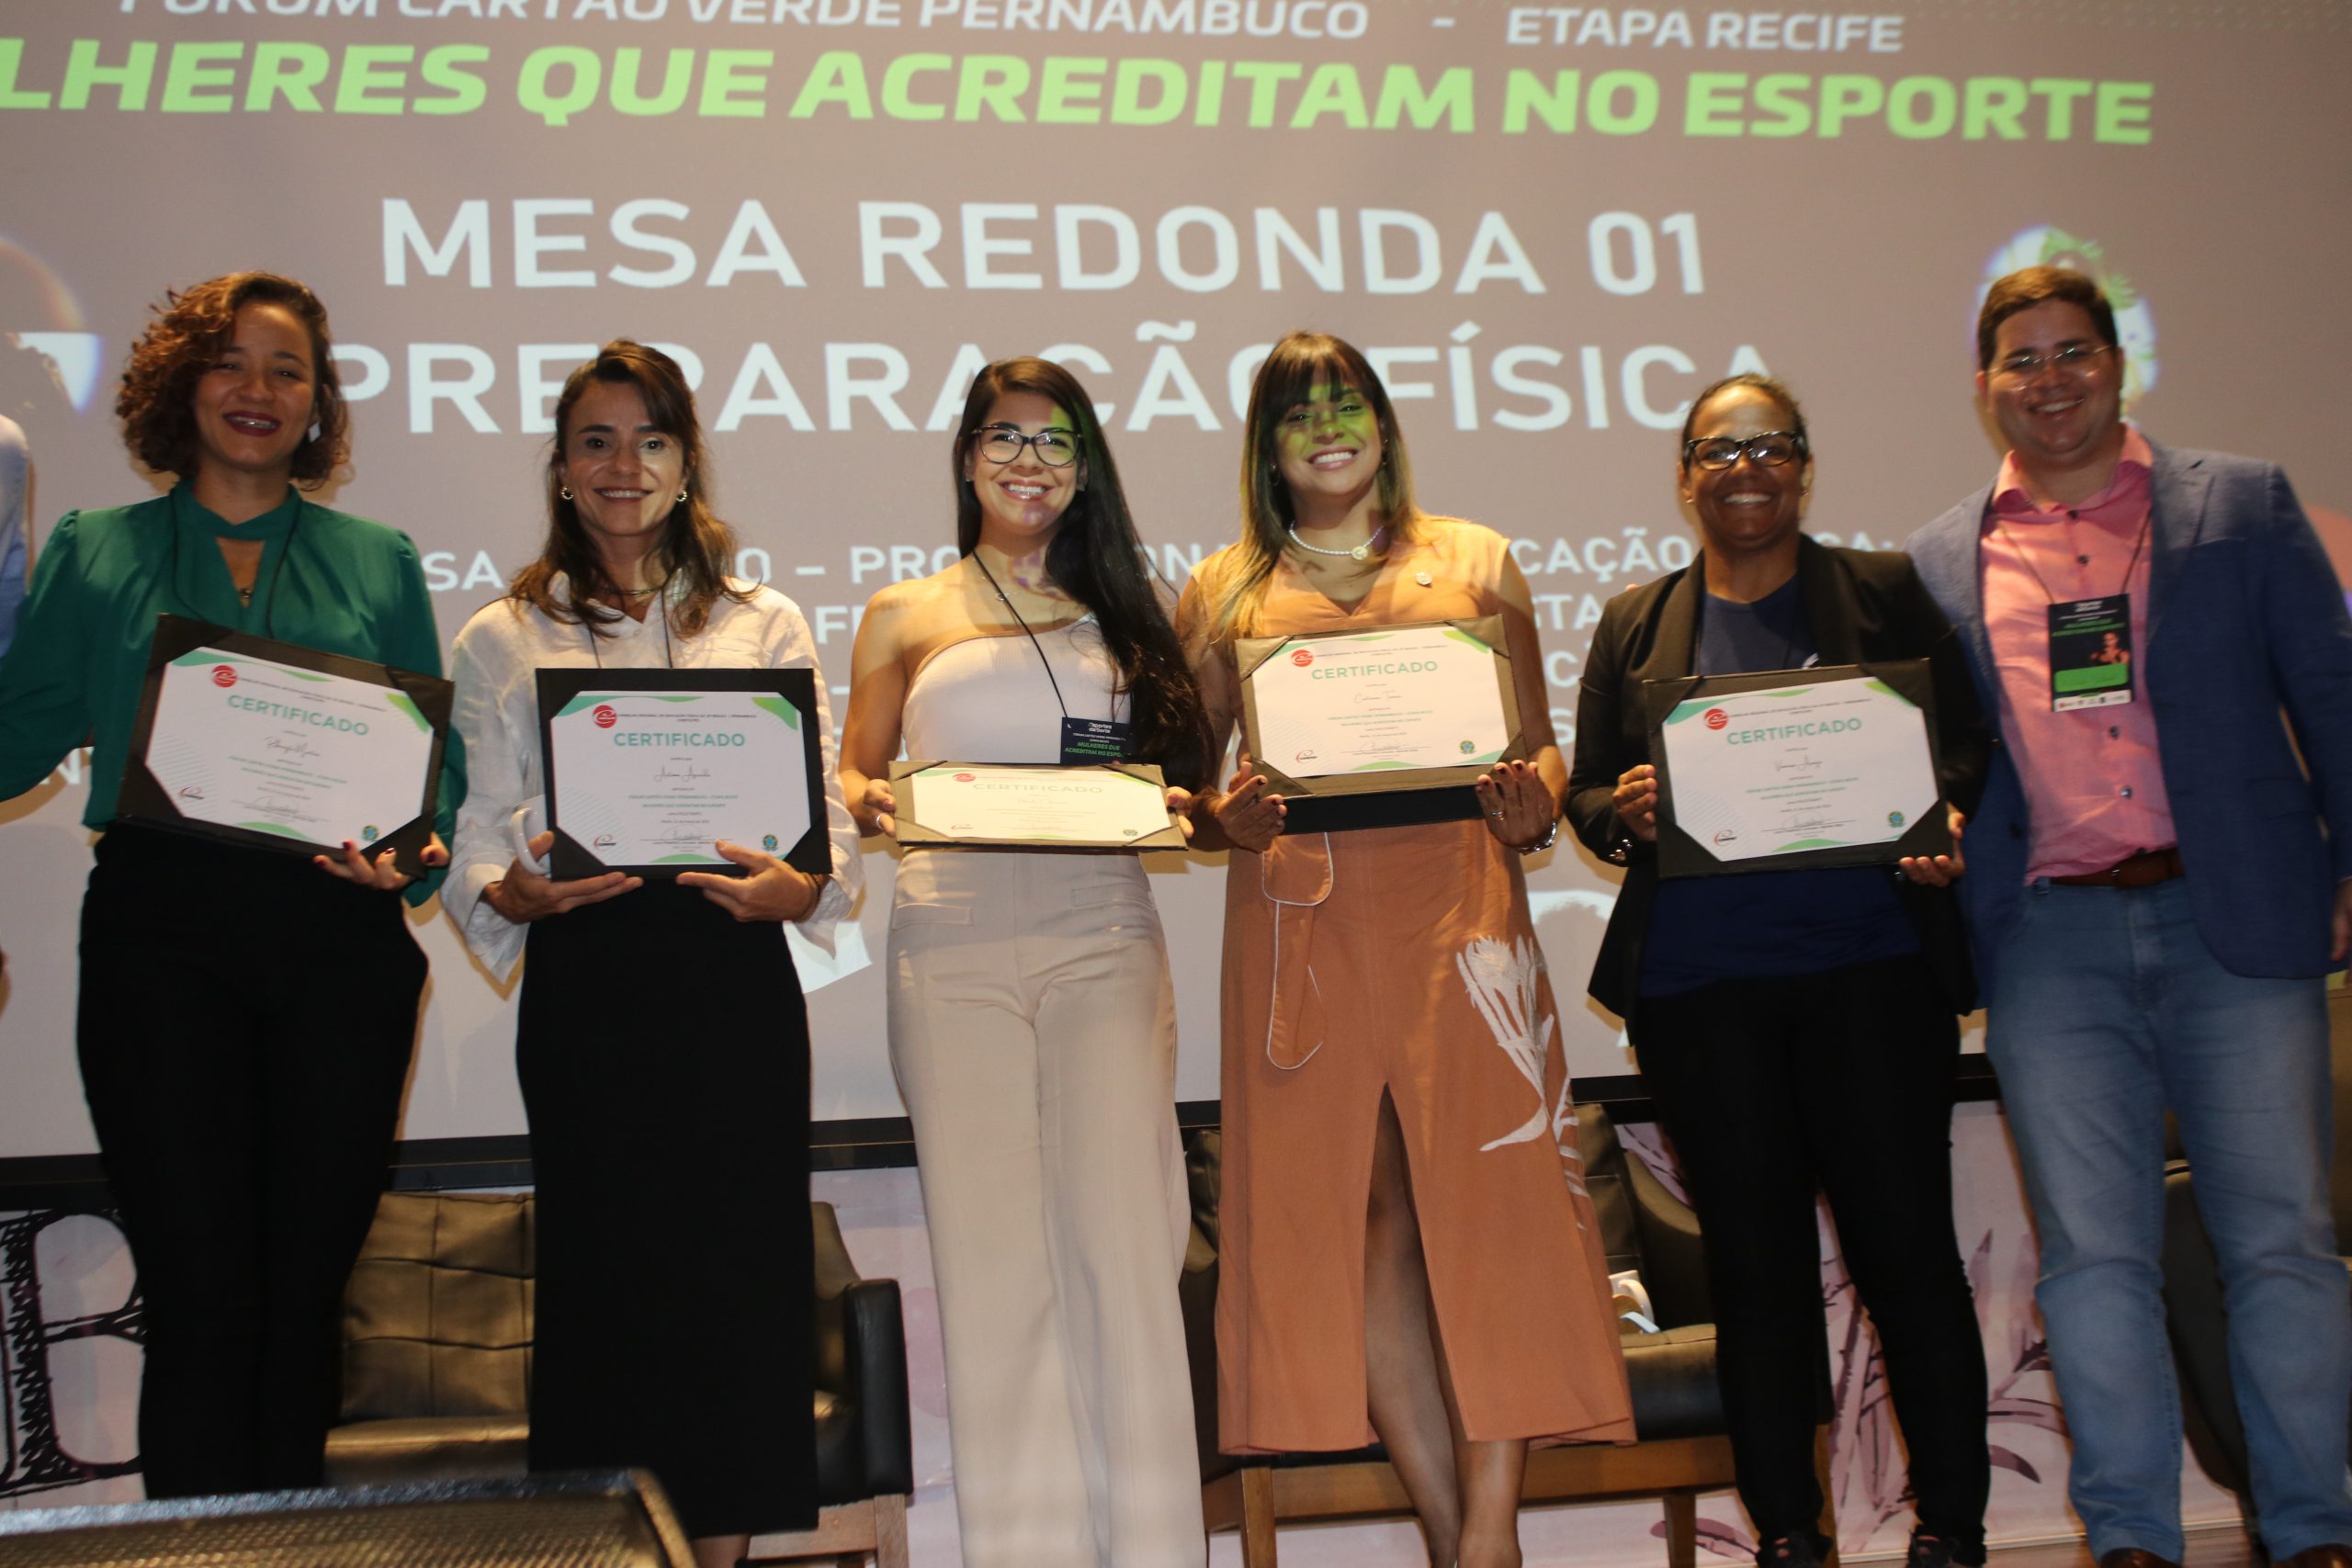 Leia mais sobre o artigo Fórum Cartão Verde Pernambuco destaca o papel das mulheres no esporte